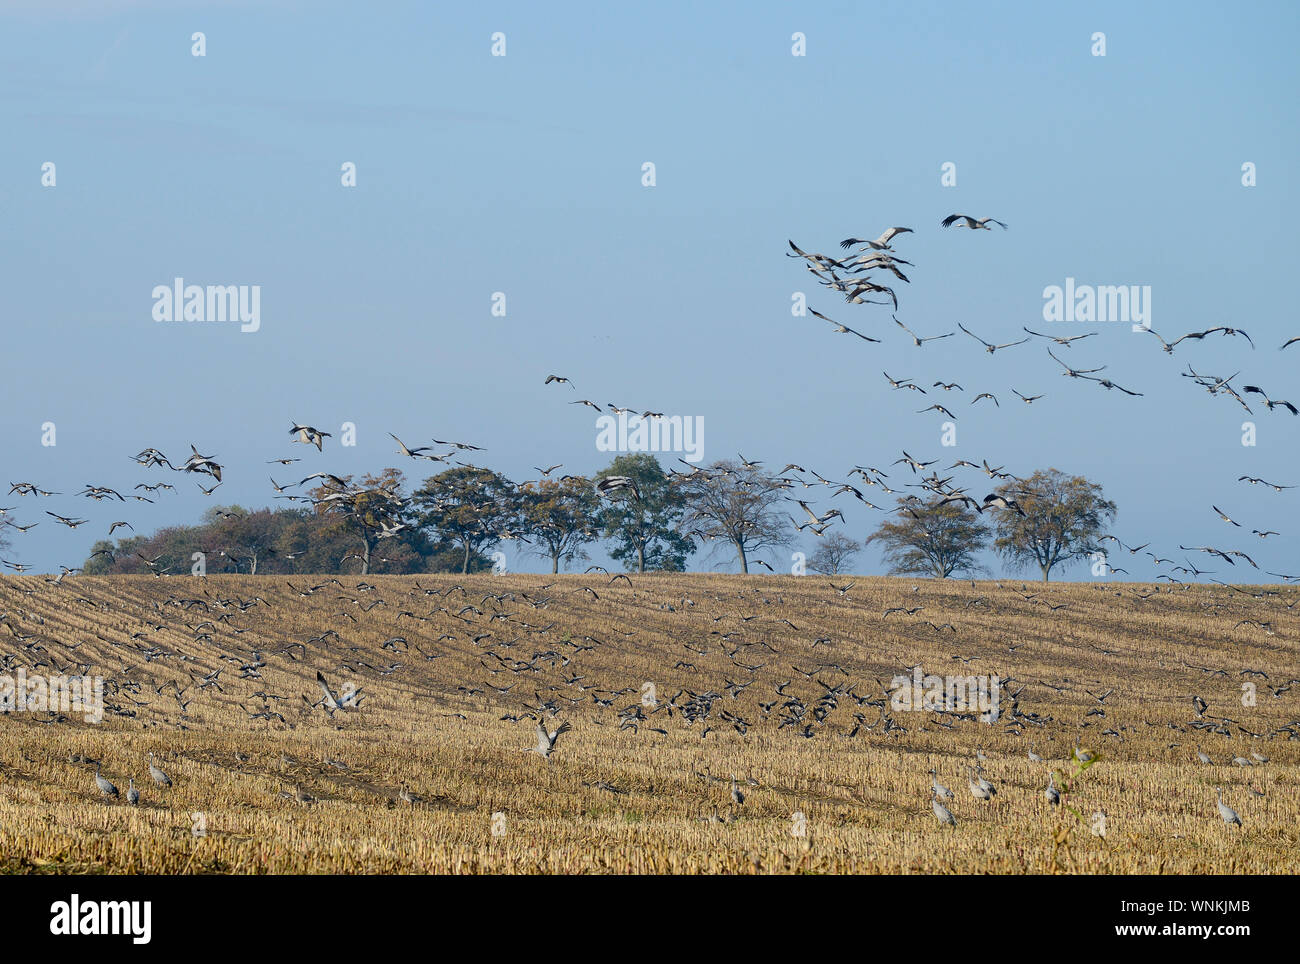 GERMANY, Ruegen, crane on maize field in autumn, cranes are migratory birds and stop here on their annual migration / DEUTSCHLAND, Rügen, Sagard, Kraniche auf Maisfeld im Herbst Stock Photo